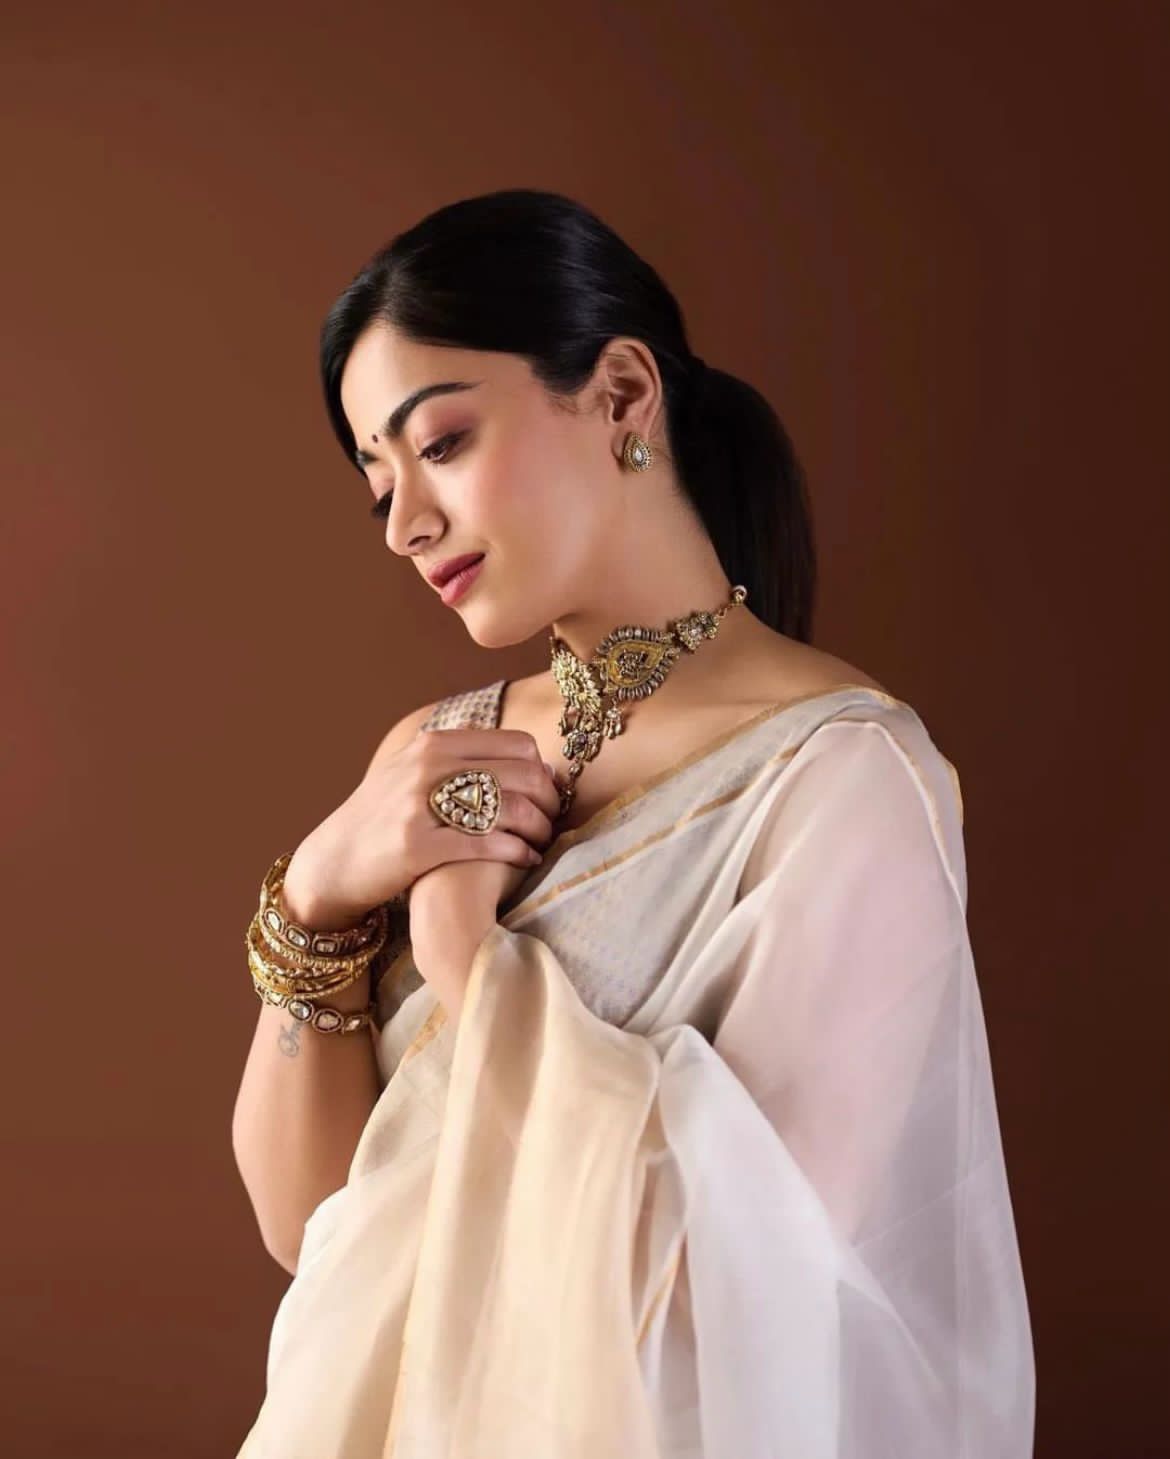 Women Earrings Saree - Buy Women Earrings Saree online in India